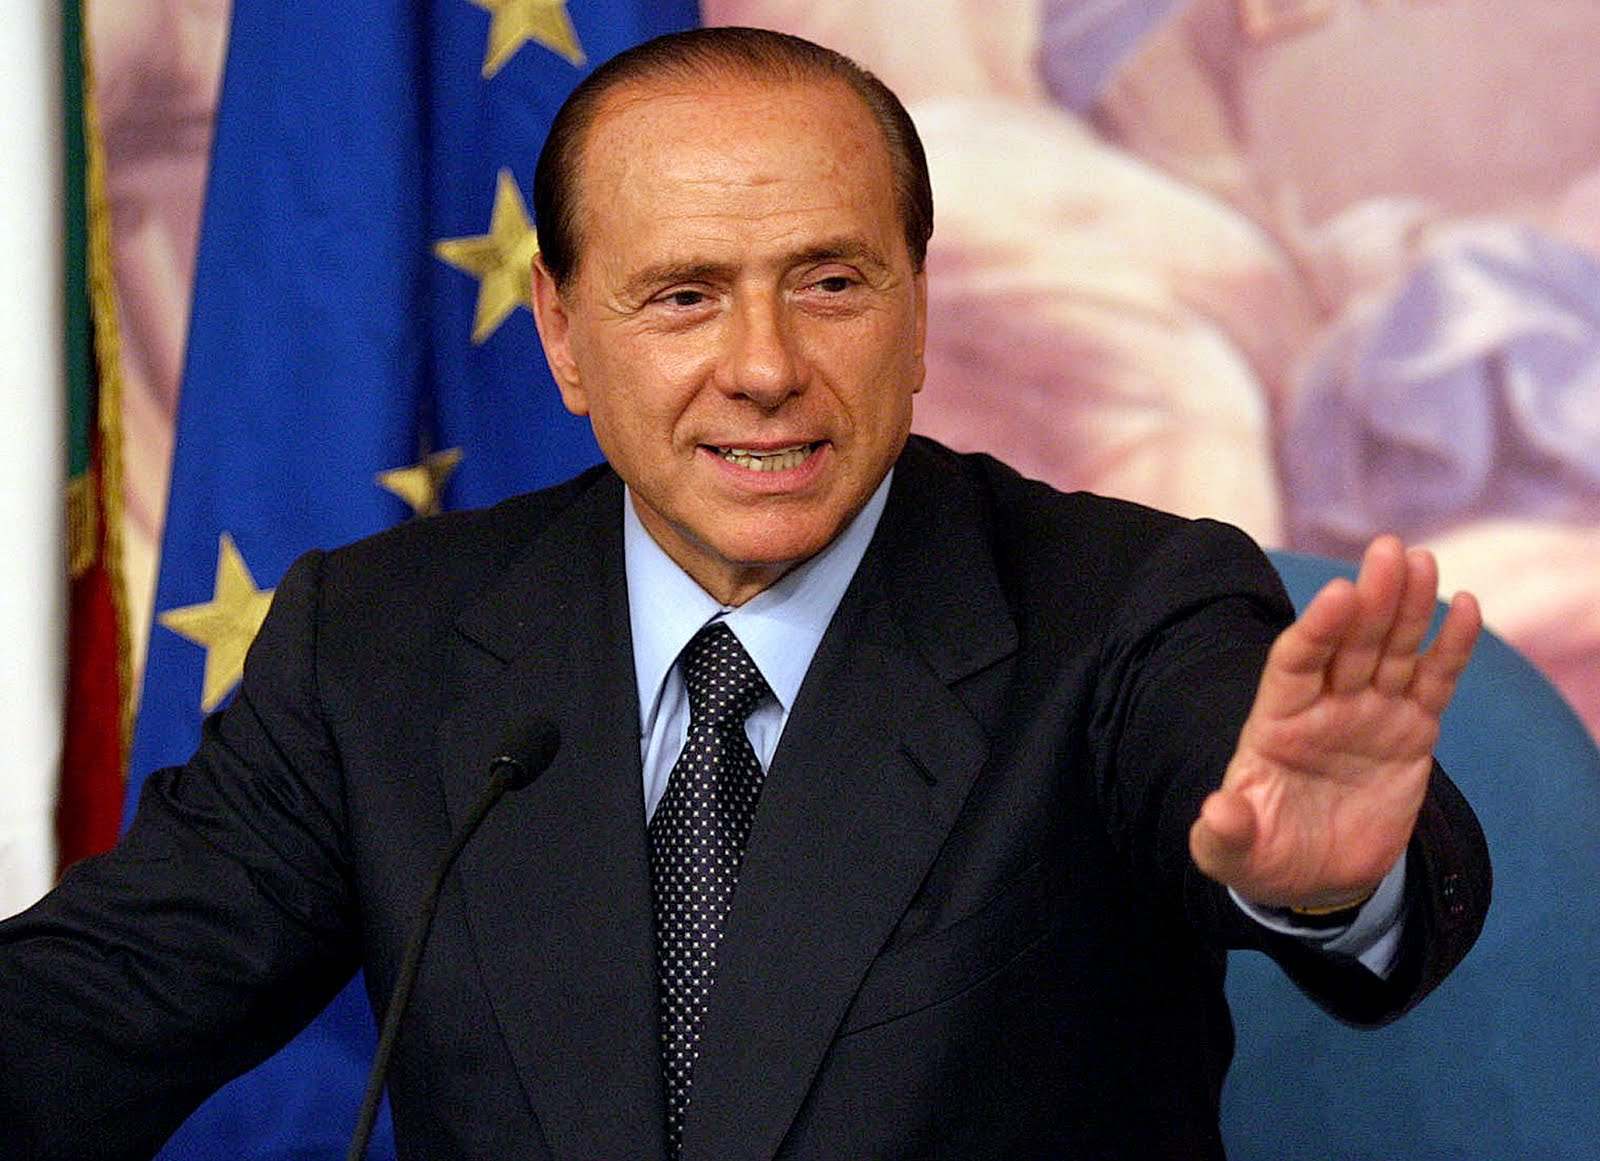 Ett exempel på ett samhälle där maktkoncentration inom media har varit skadligt för demokratin är Italien, där Silvio Berlusconi lyckades bli premiärminister flera gånger om bara på grund av att han